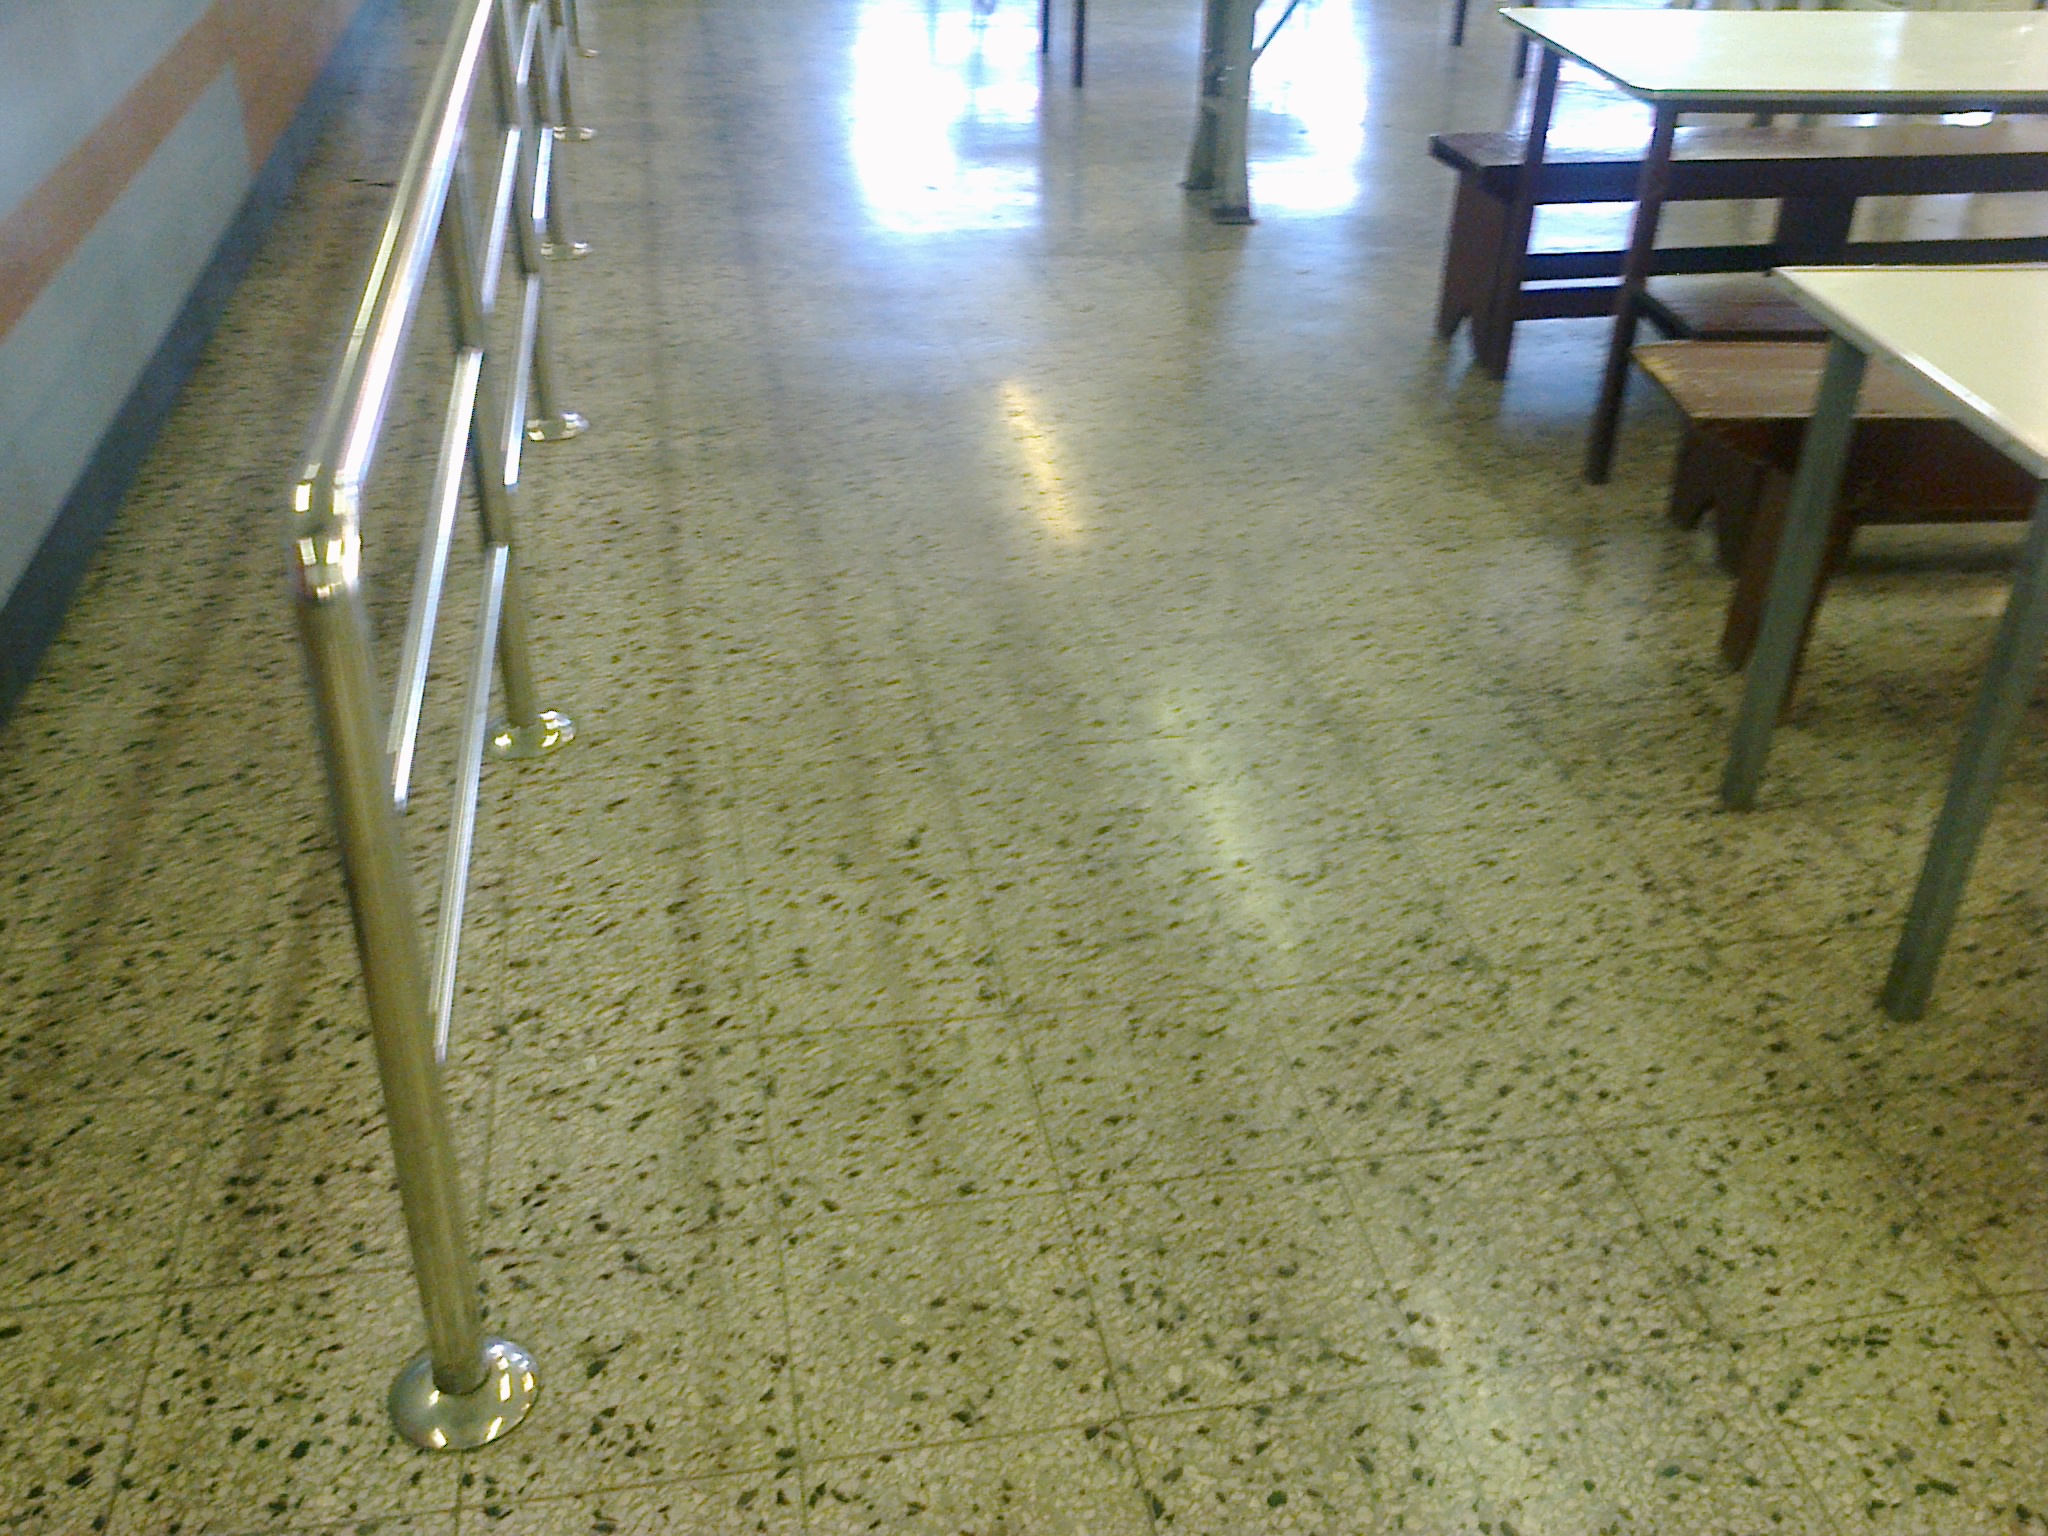 Mantenimiento de pisos en marmol santo domingo limpieza de porcelanato republica dominicana empresa de brillado servicios de pulido y cristalizado